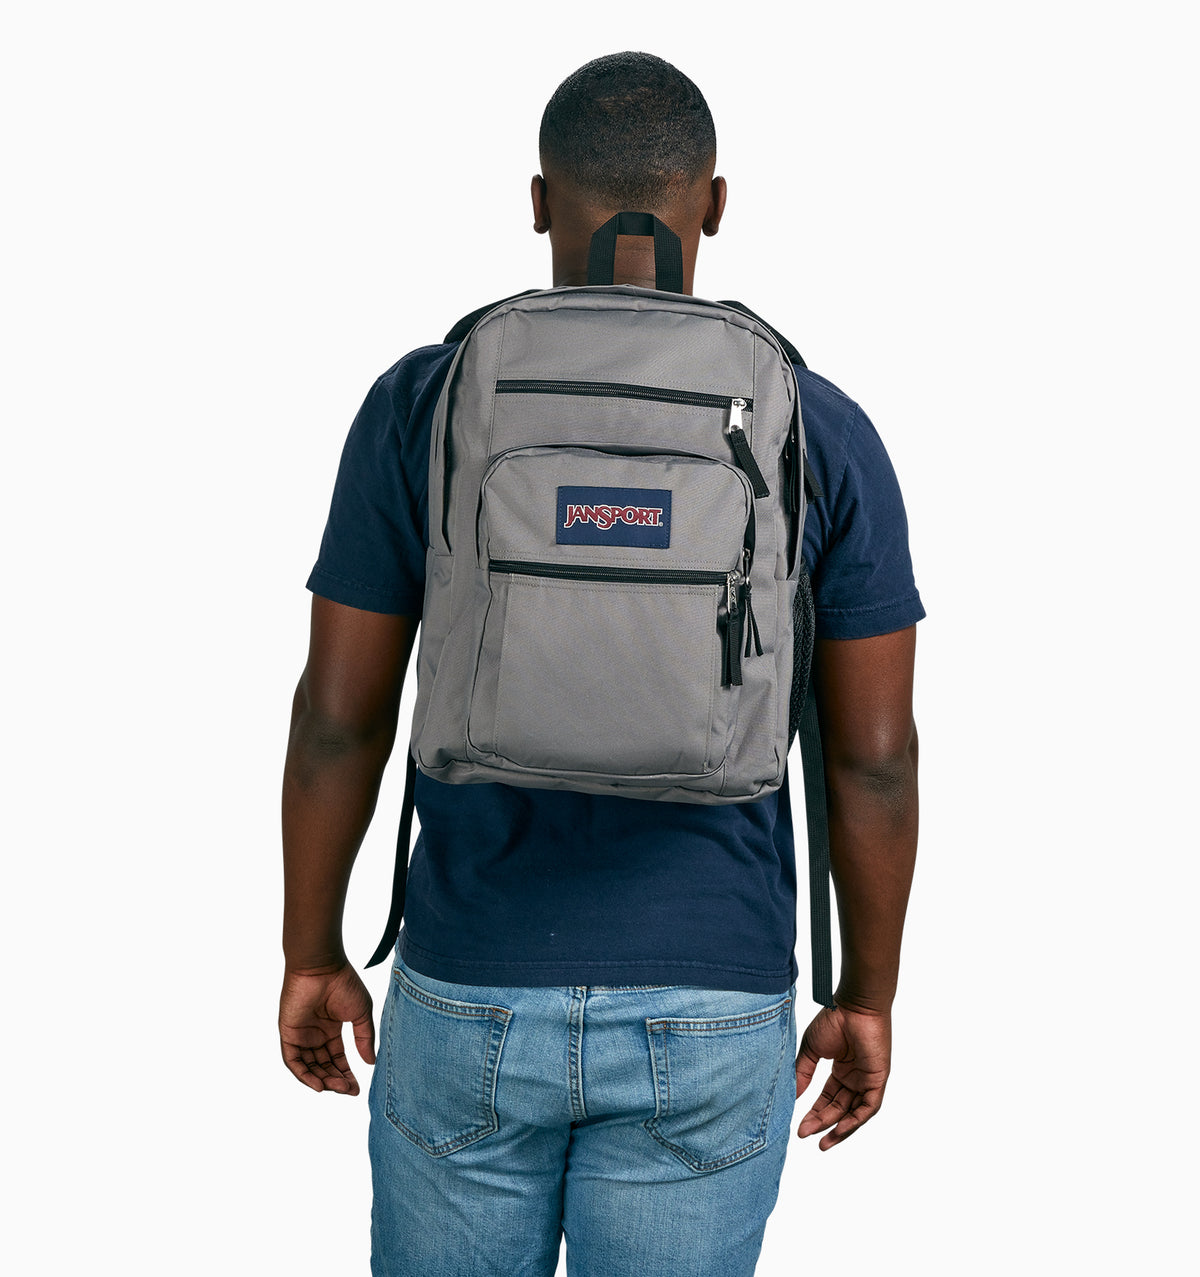 JanSport 16" Big Student Laptop Backpack 34L - Graphite Grey